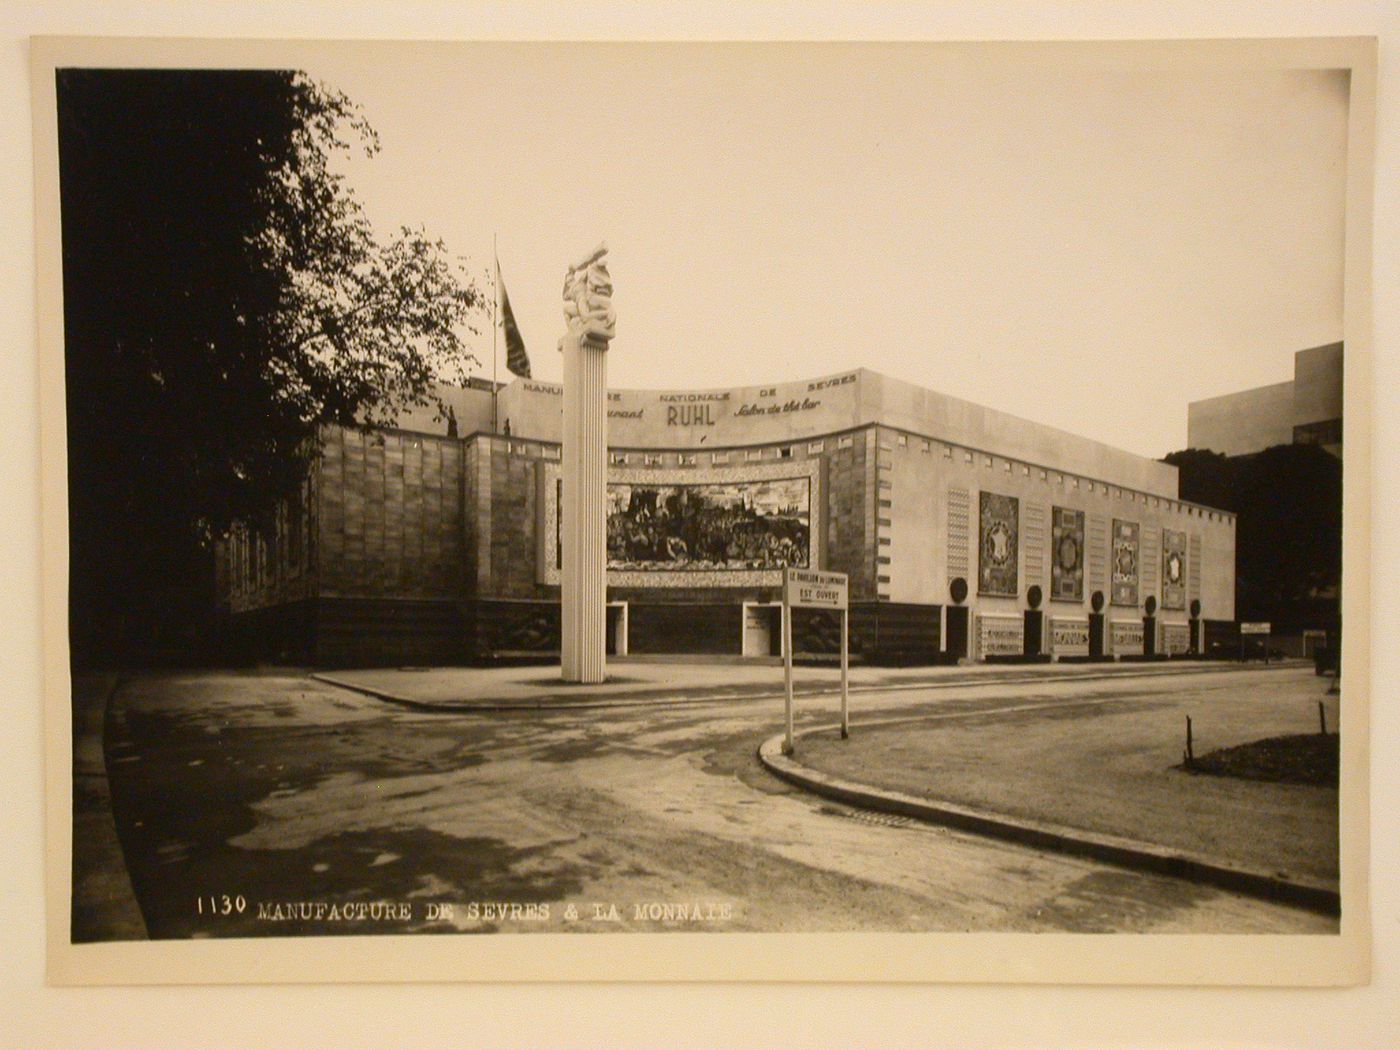 View of the Manufacture de Sèvres and La Monnaie [?], 1937 Exposition internationale, Paris, France